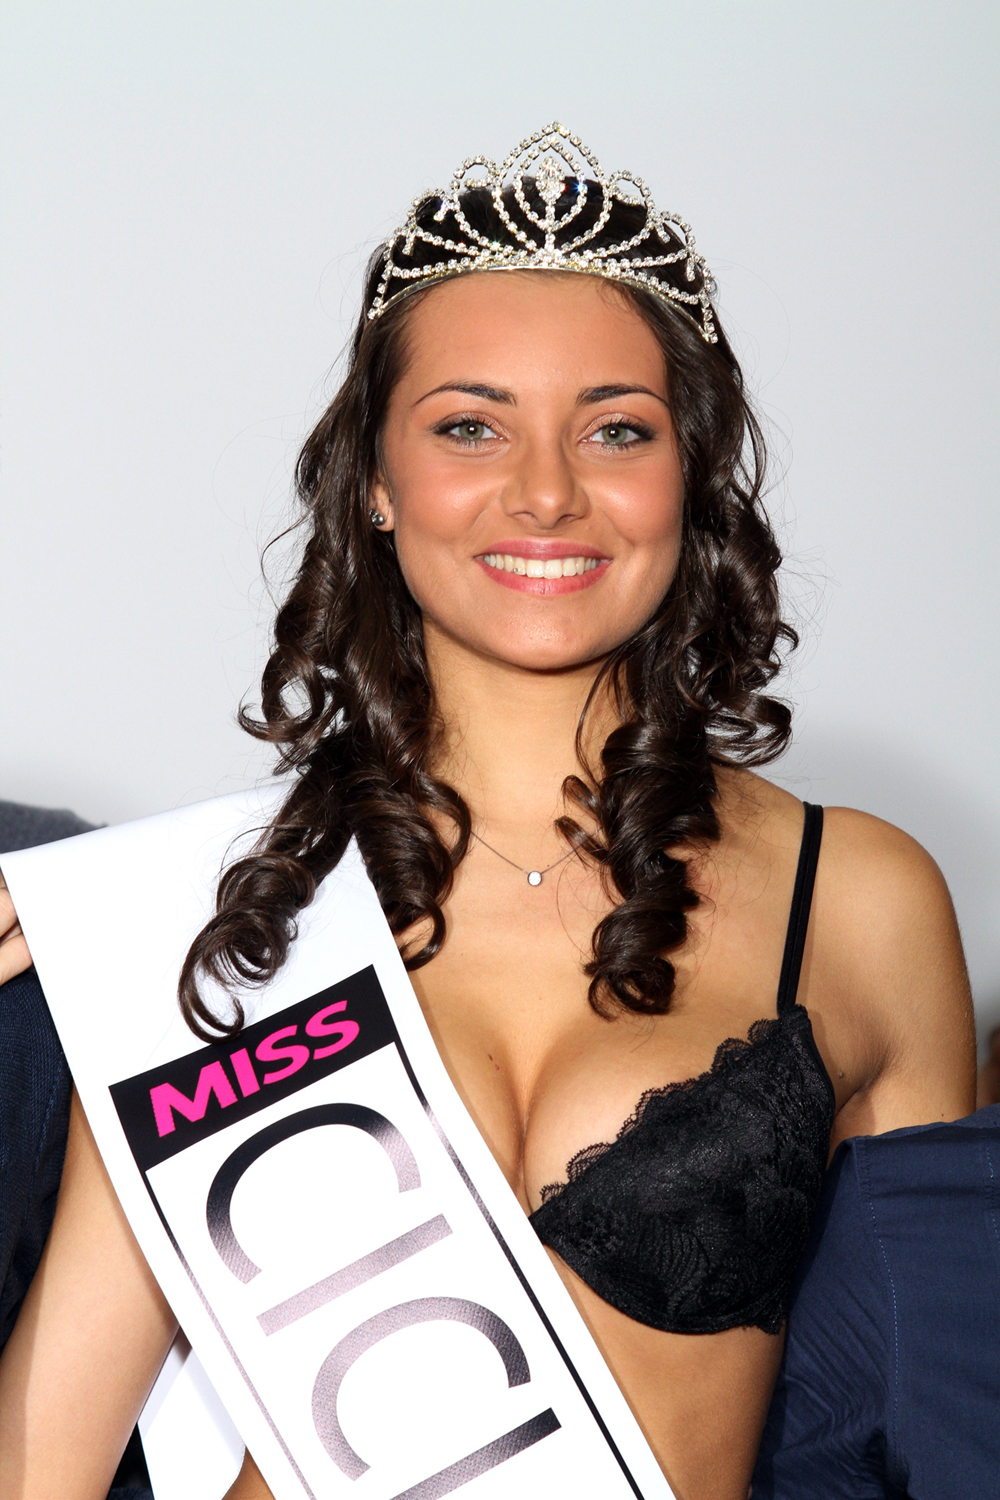 Miss-Ciclismo-2013-Melissa-Meduri.jpg